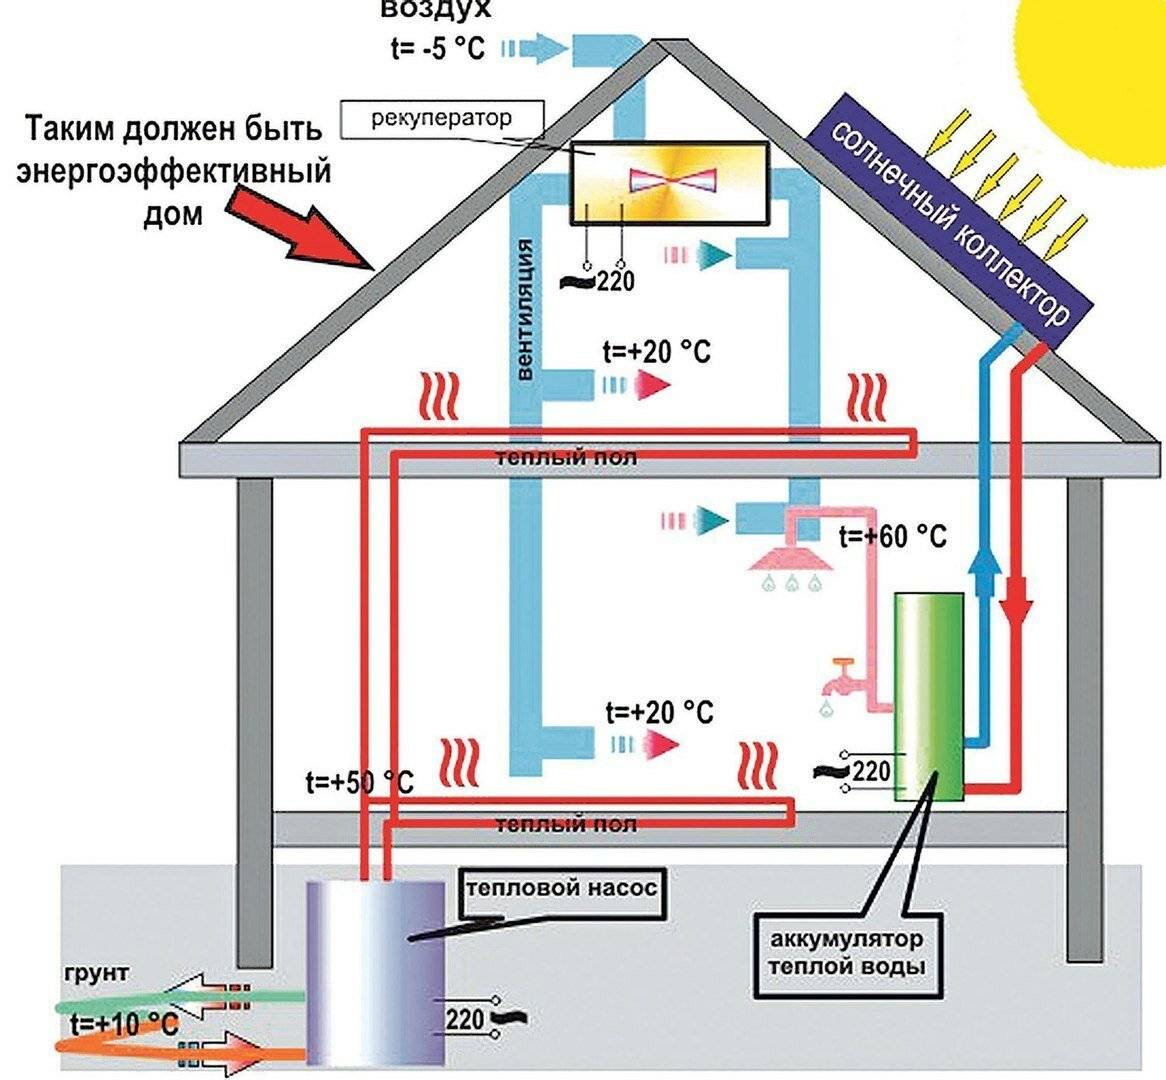 Энергосберегающее отопление без труб котлов и батарей - только ремонт своими руками в квартире: фото, видео, инструкции